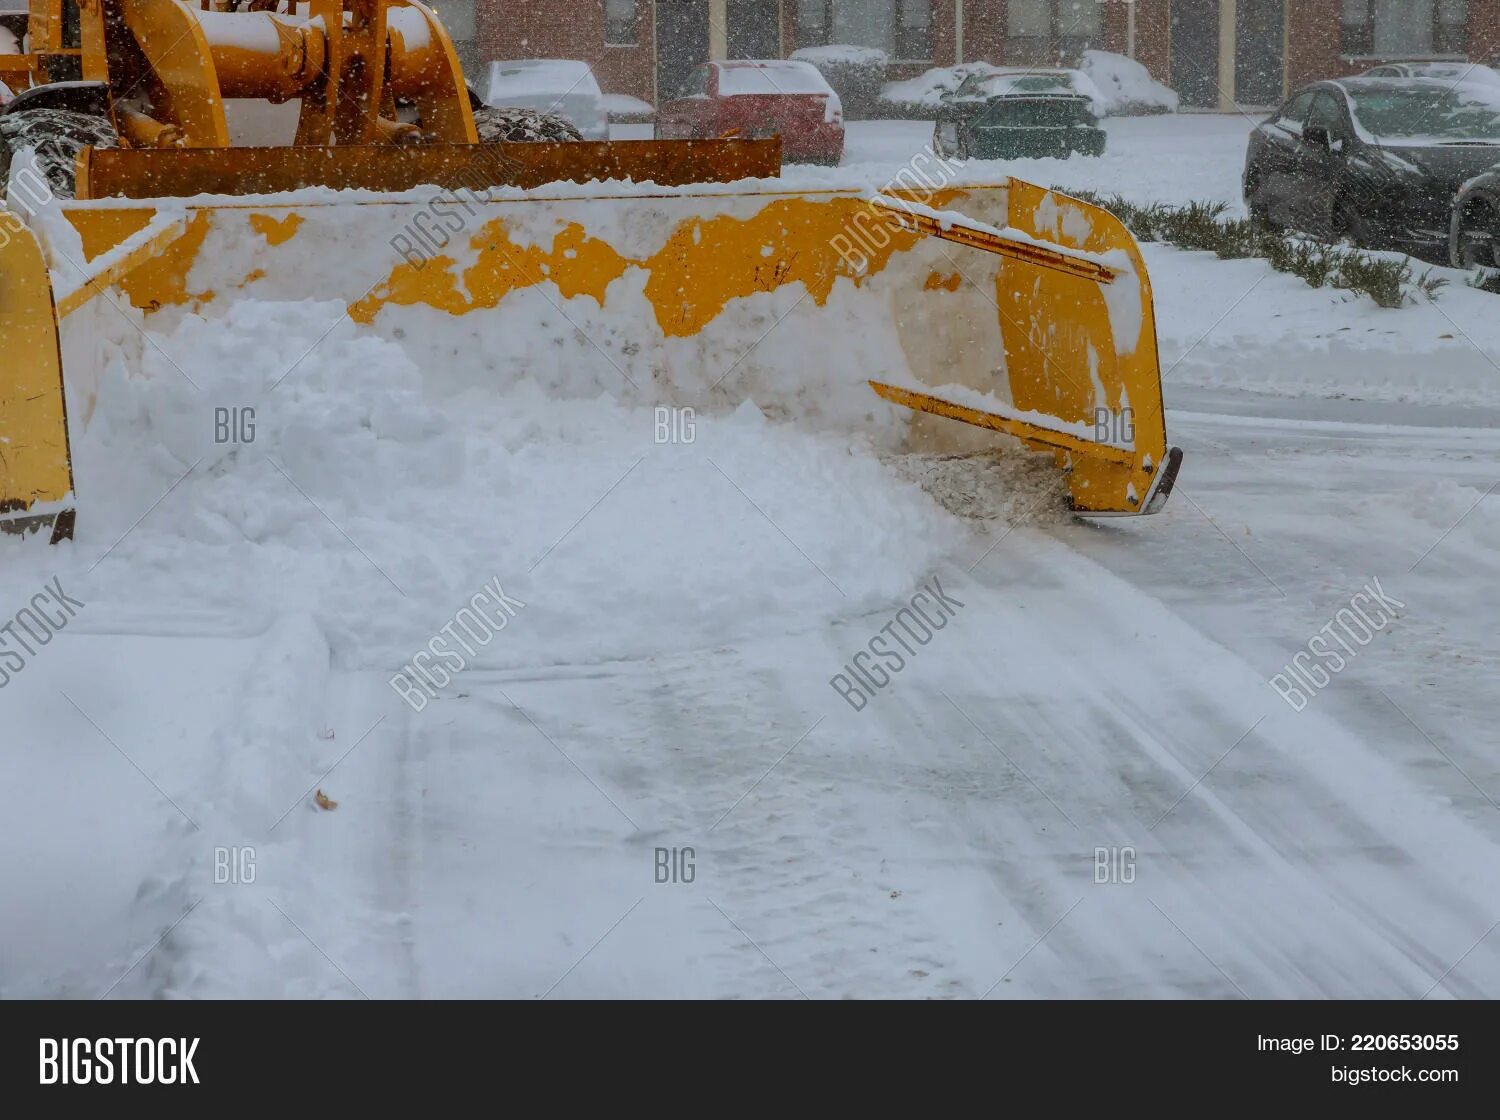 Игра трактора чистят снег. Трактор чистит дорогу. Трактор с щеткой чистит снег. Ram 2500 убирает снег. Отопление для трактора.